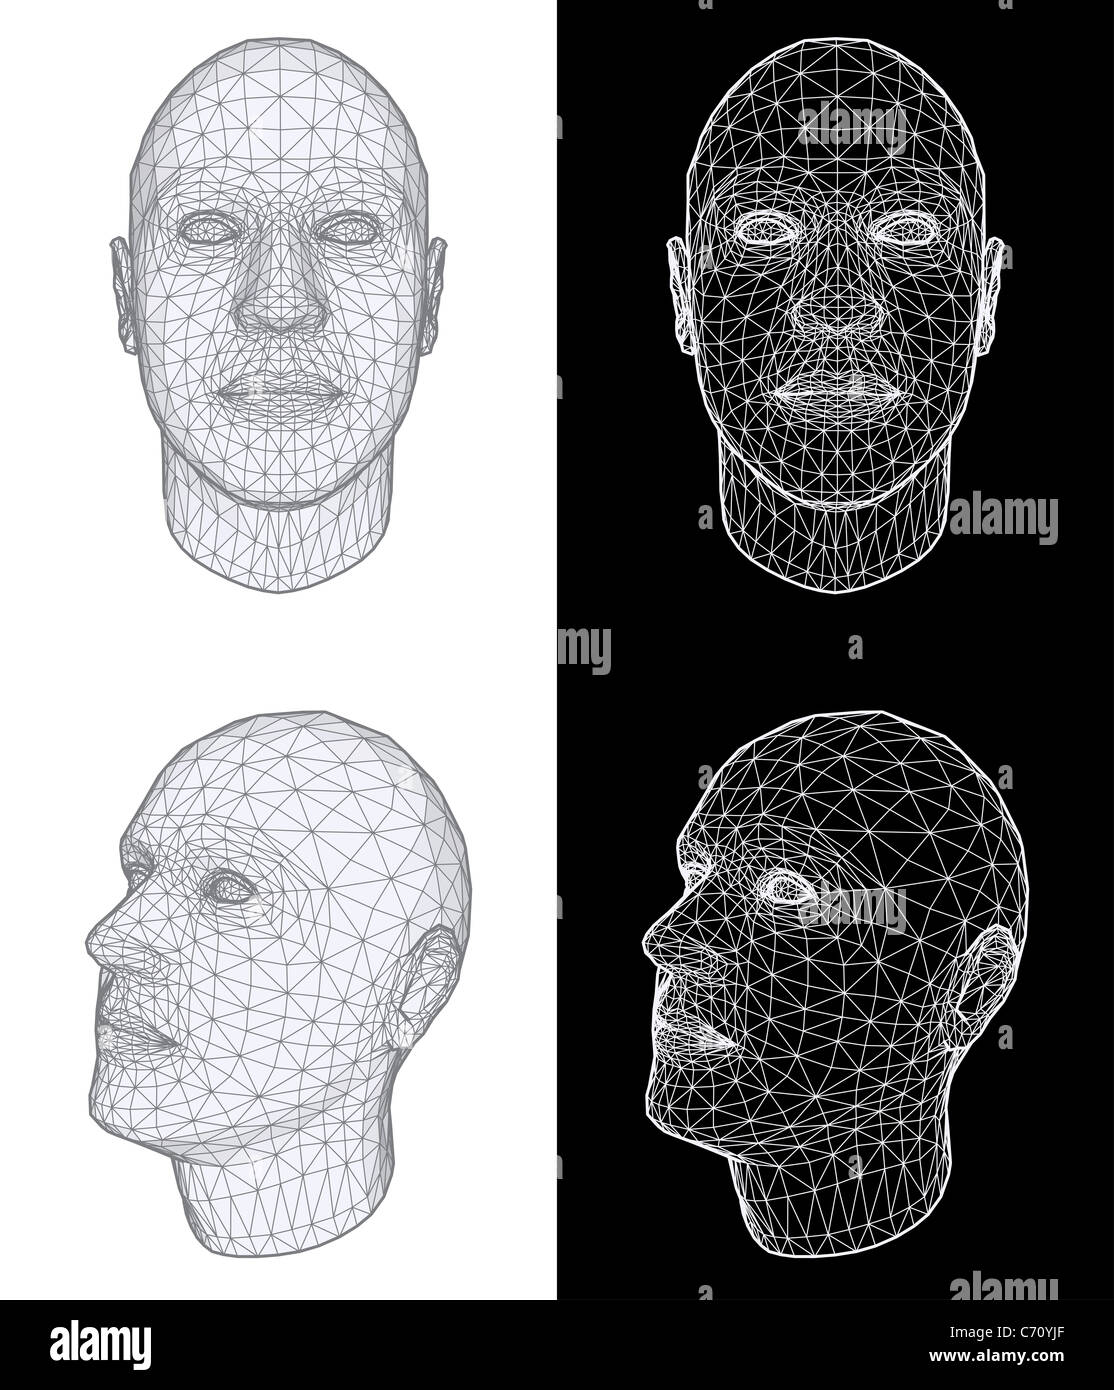 Human head 3D Illustration Stock Photo